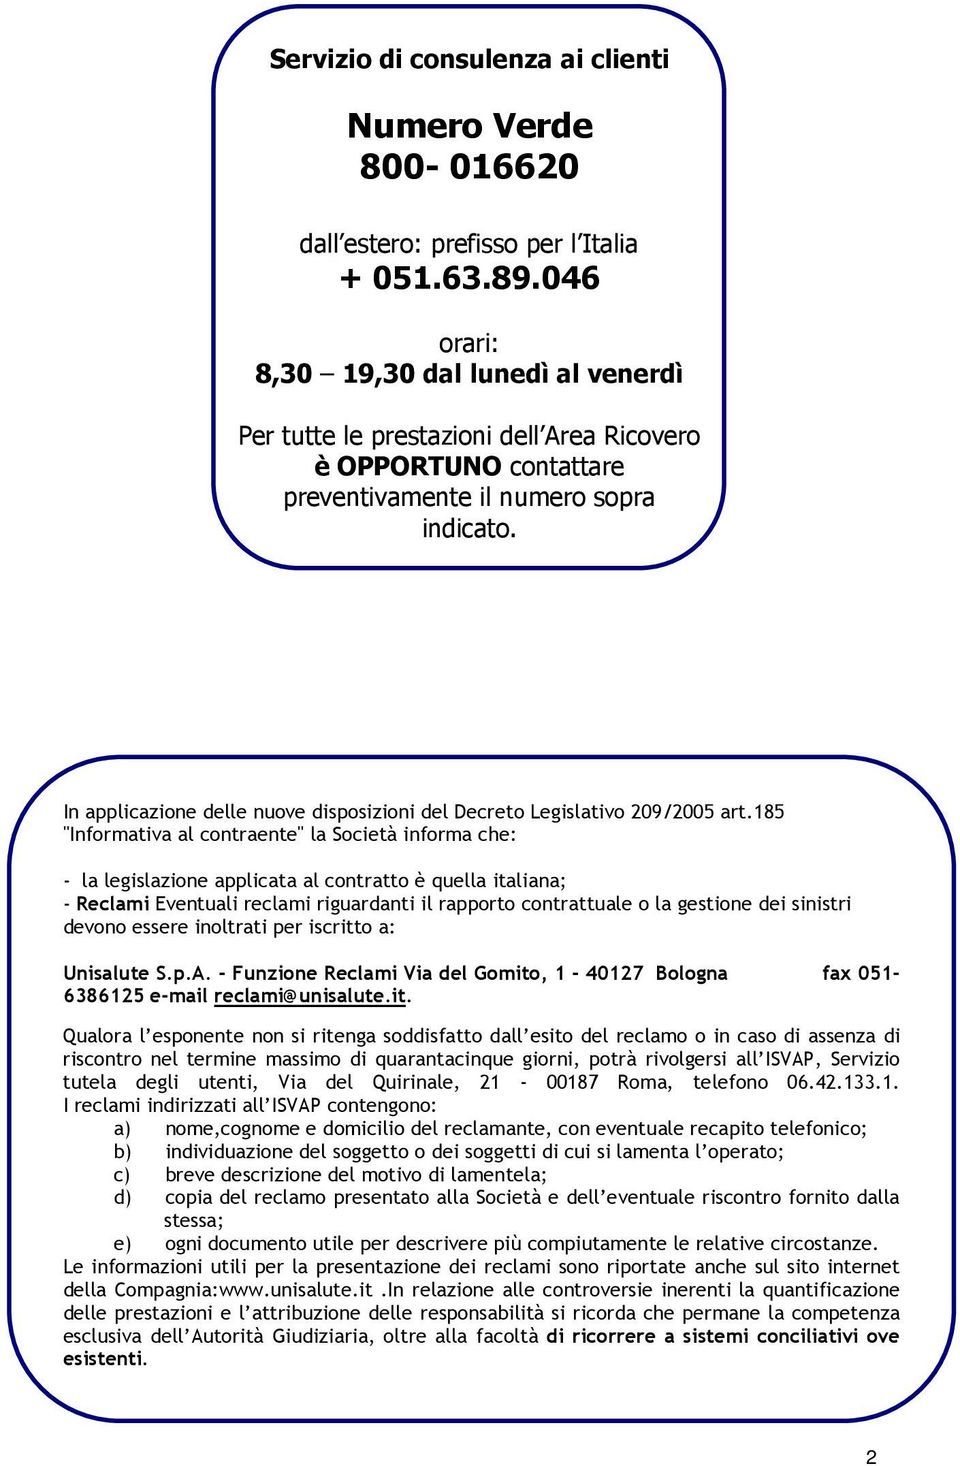 In applicazione delle nuove disposizioni del Decreto Legislativo 209/2005 art.